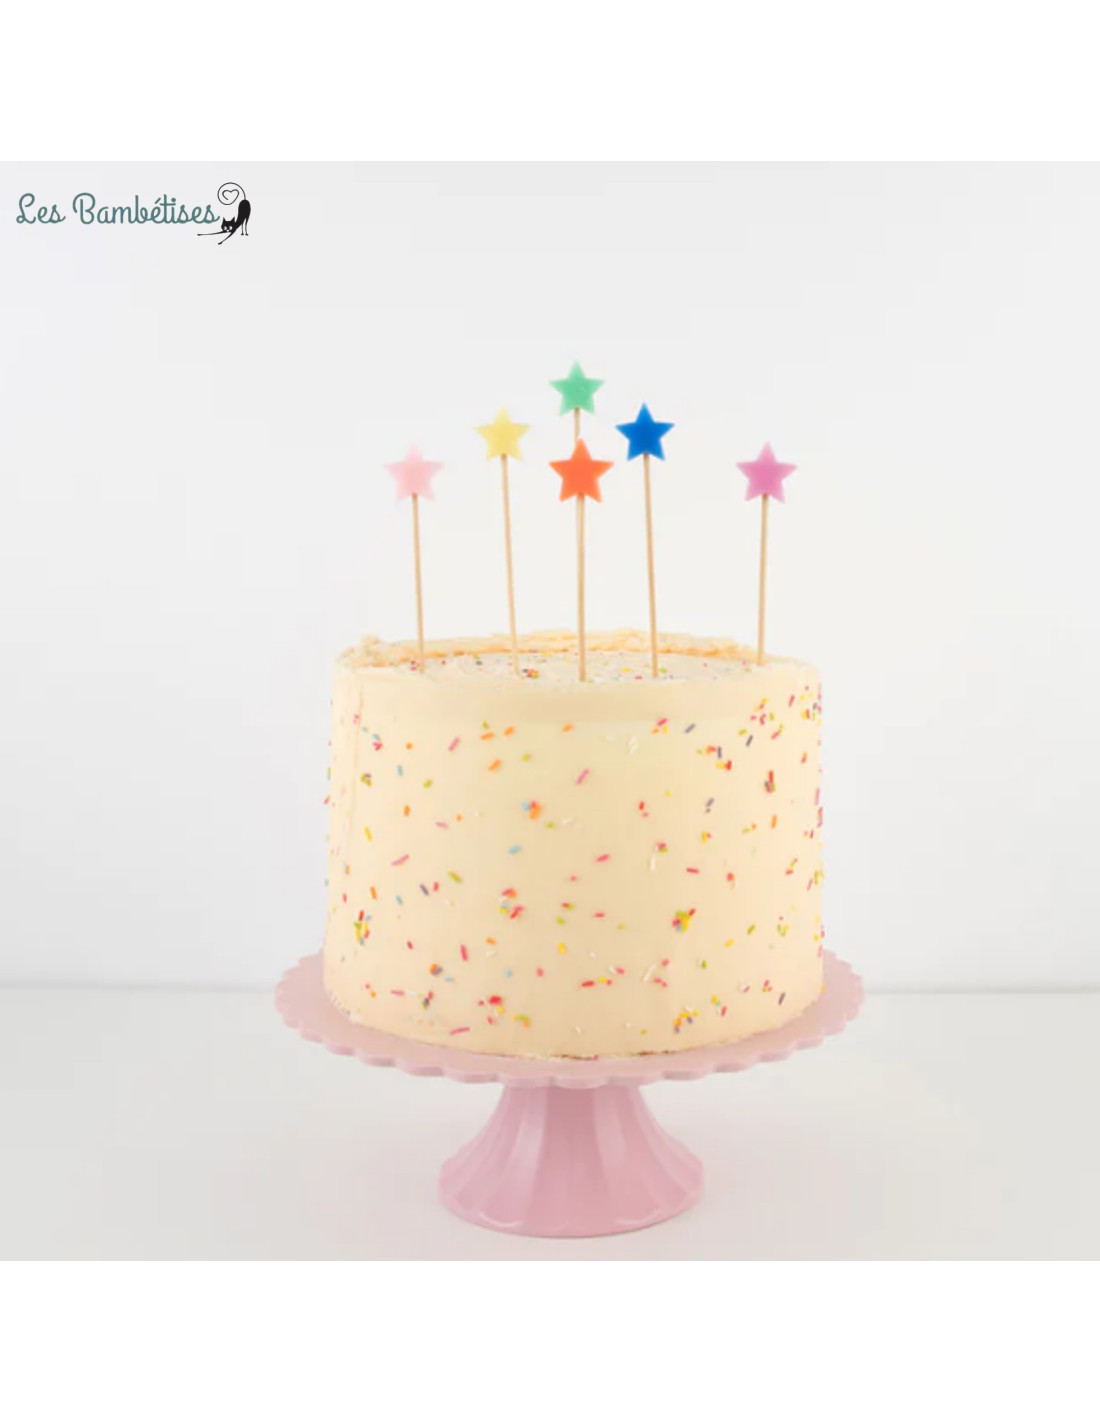 Bougie anniversaire arc-en-ciel Meri Meri - Pastel Shop